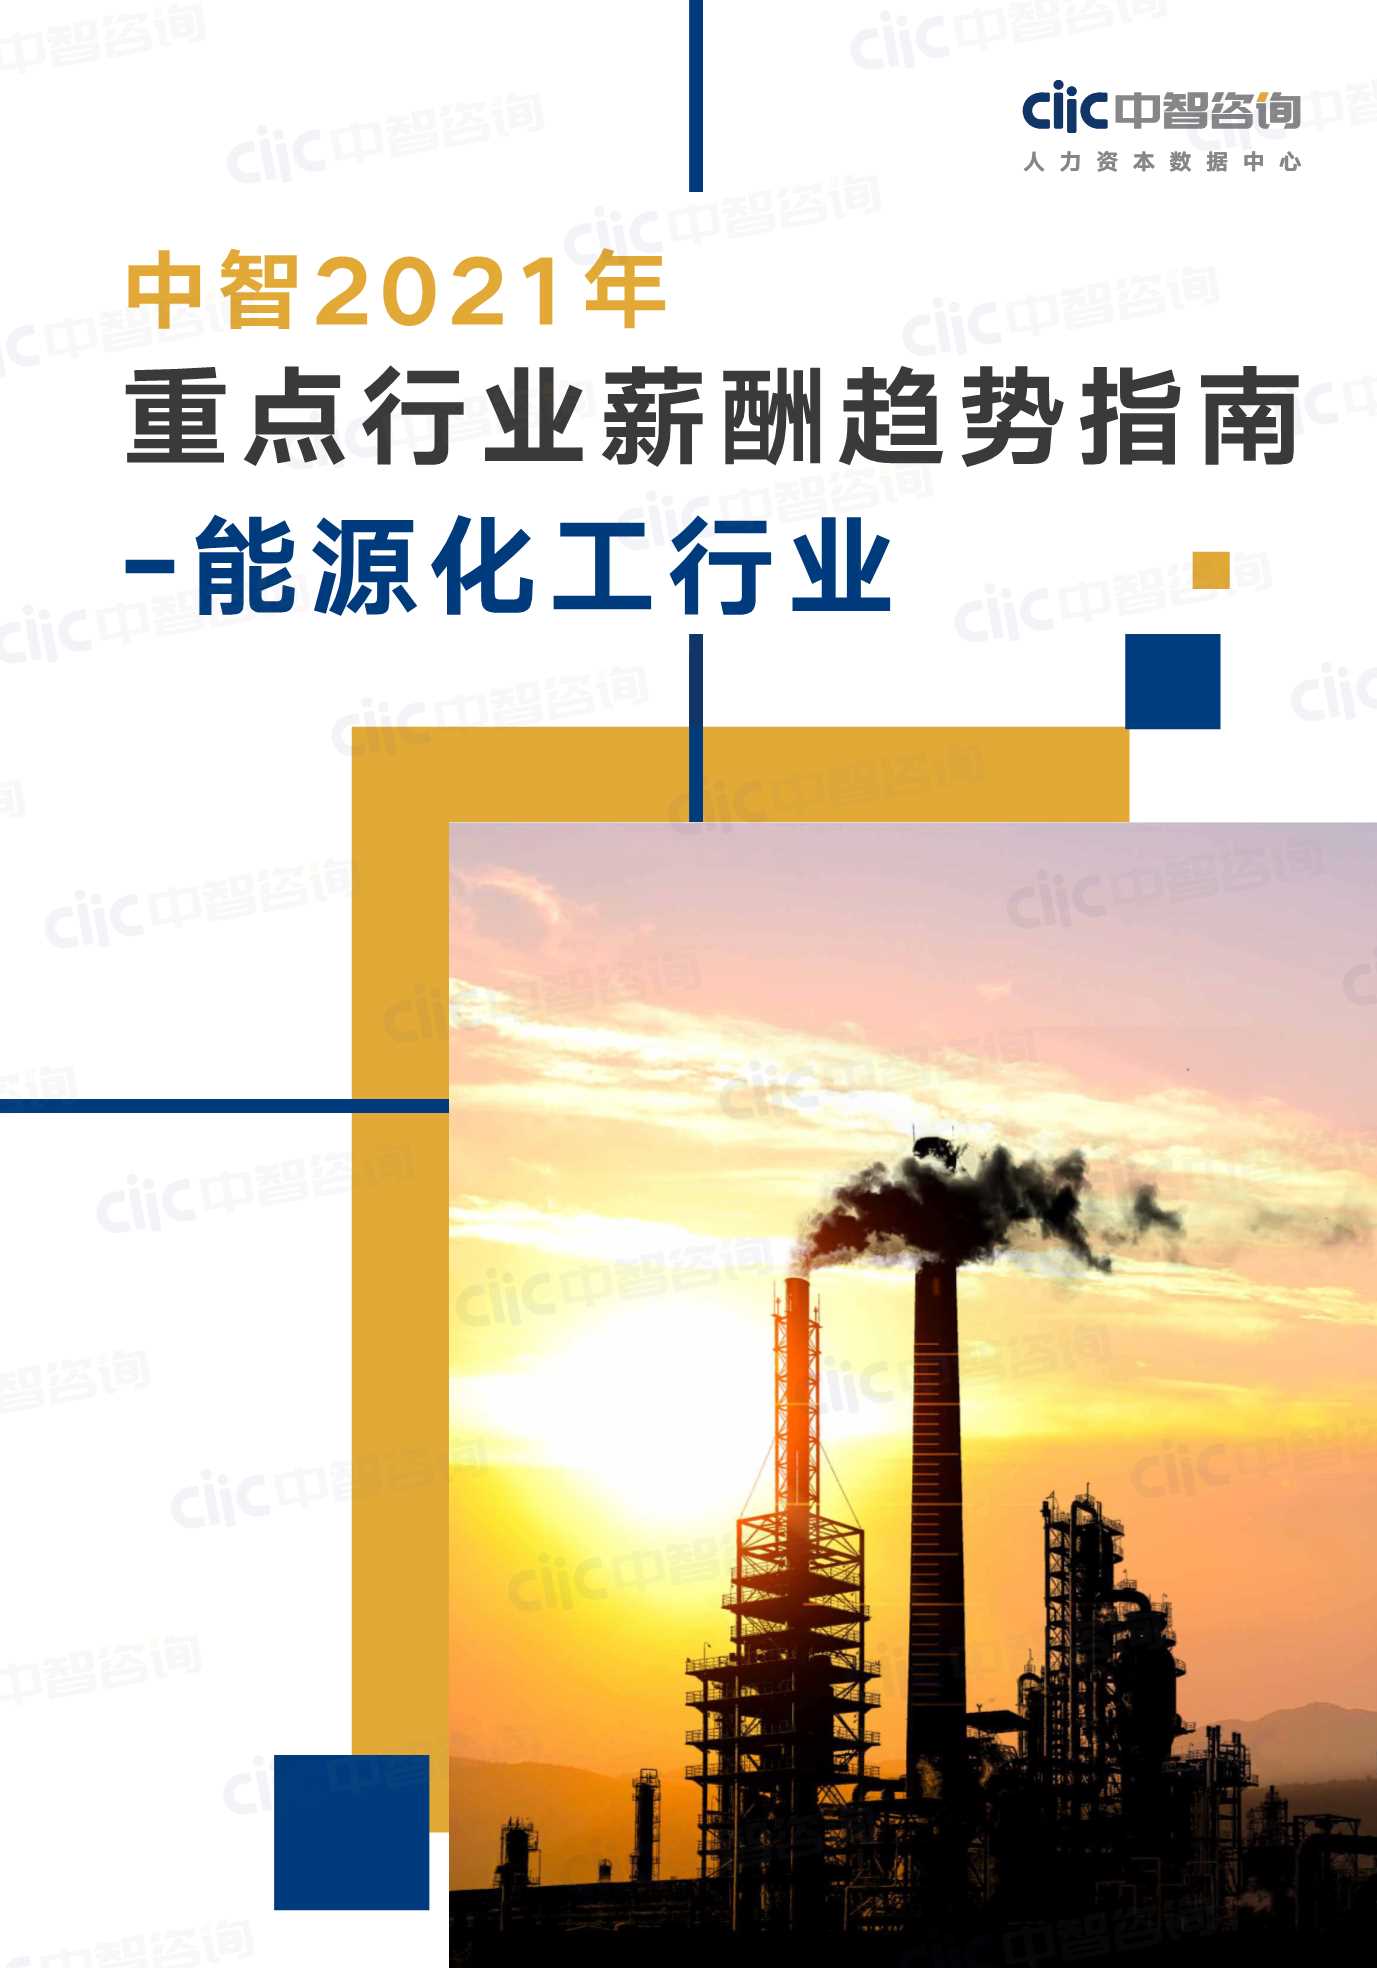 中智咨询-2021年重点行业趋势指南能源化工行业-2021.06-27页